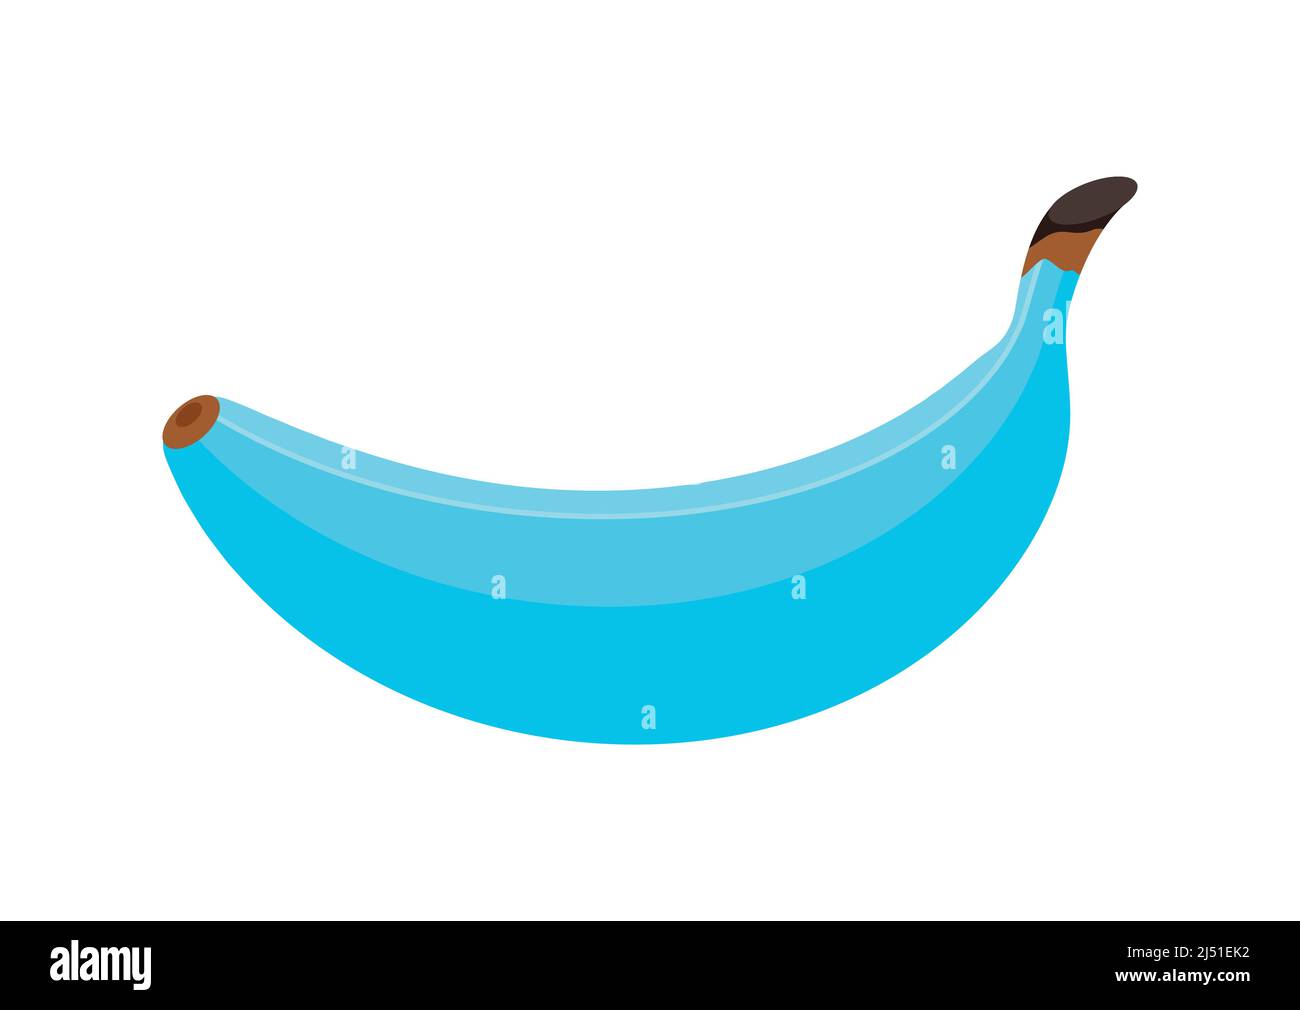 Banana blu frutta icona isolato su sfondo bianco Immagine e Vettoriale -  Alamy